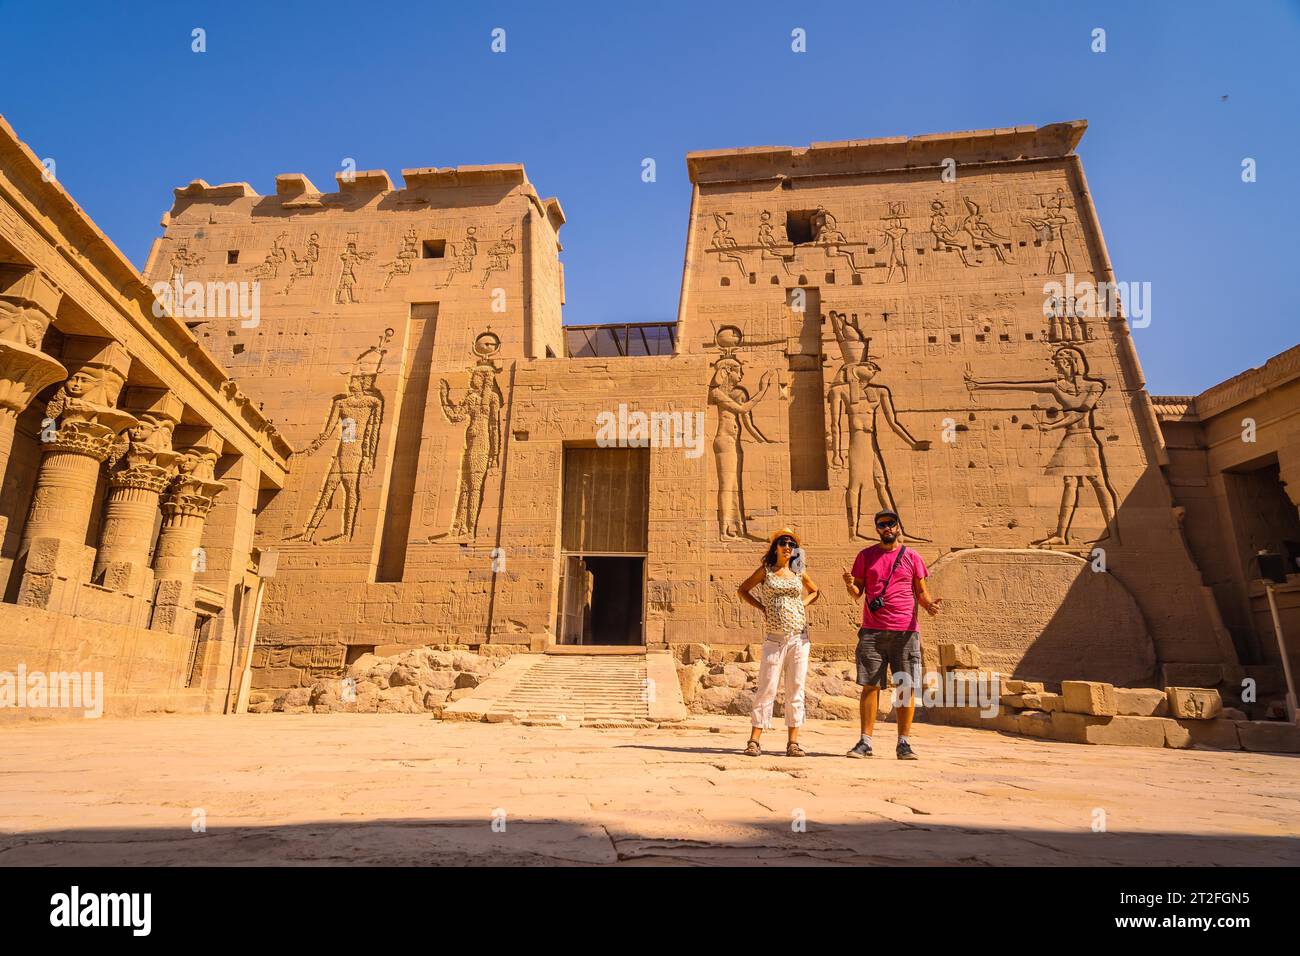 Ein paar Touristen im Tempel von Philae, einem griechisch-römischen Bau vom Nil aus gesehen, einem Tempel, der Isis, der Göttin der Liebe, gewidmet ist. Stockfoto